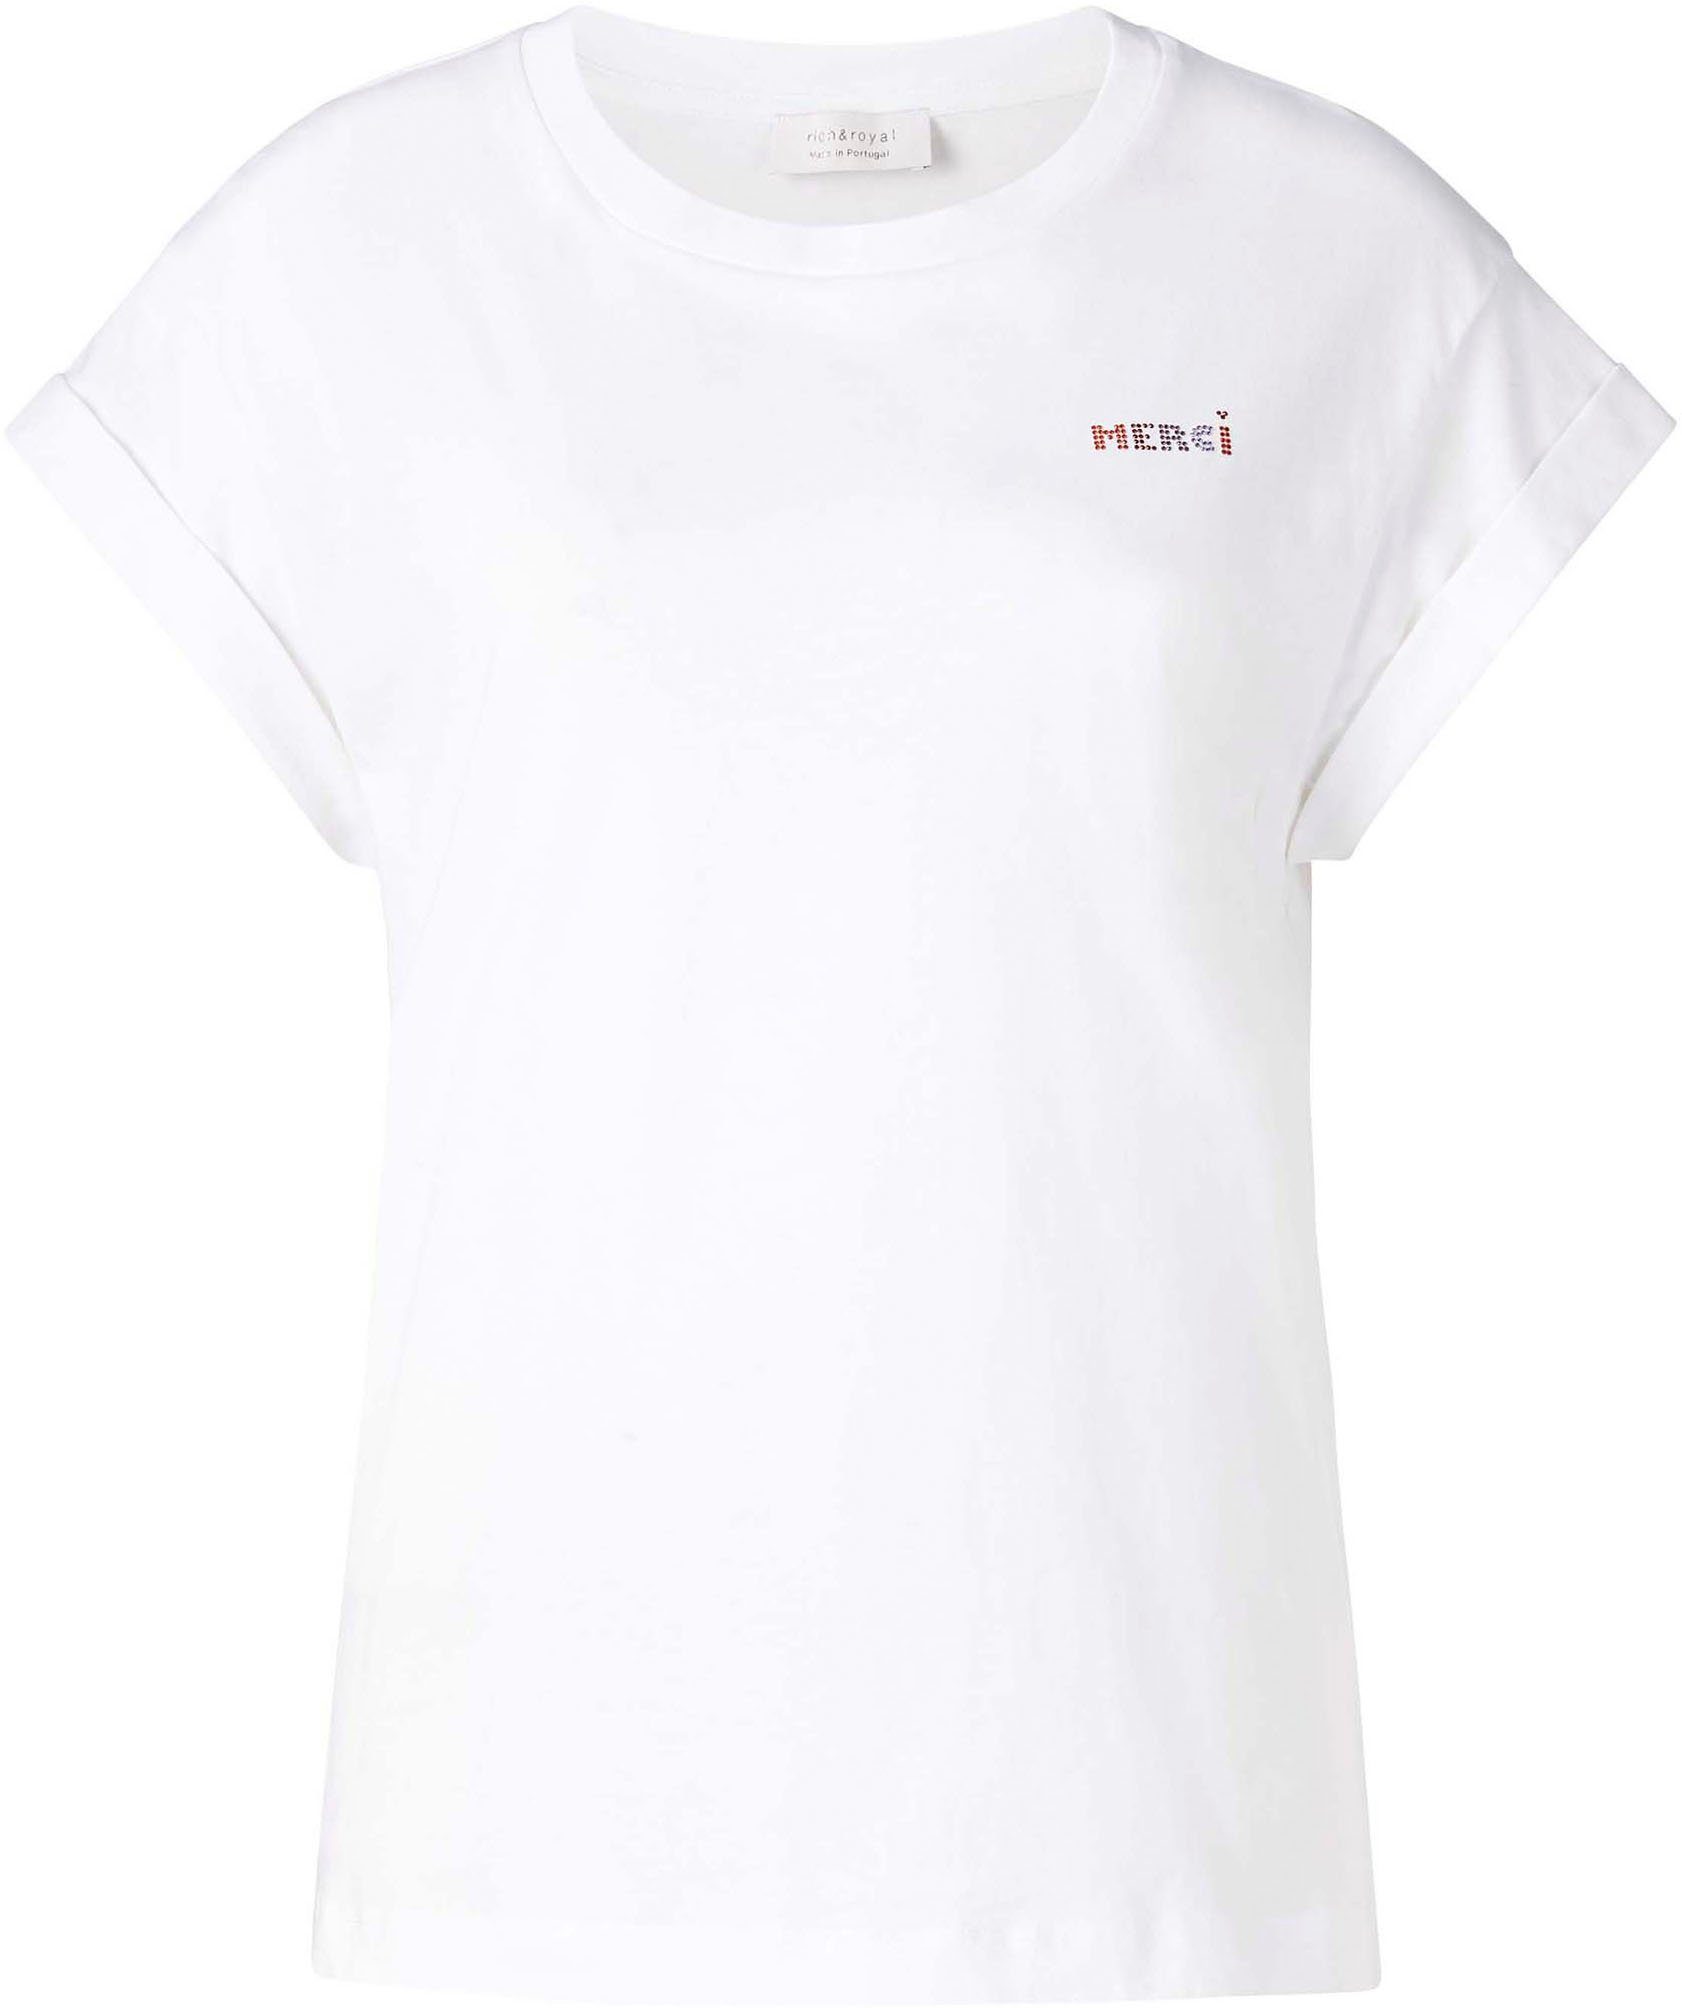 Rich & Royal T-Shirt mit in Glitzer-Print weiß Brusthöhe original